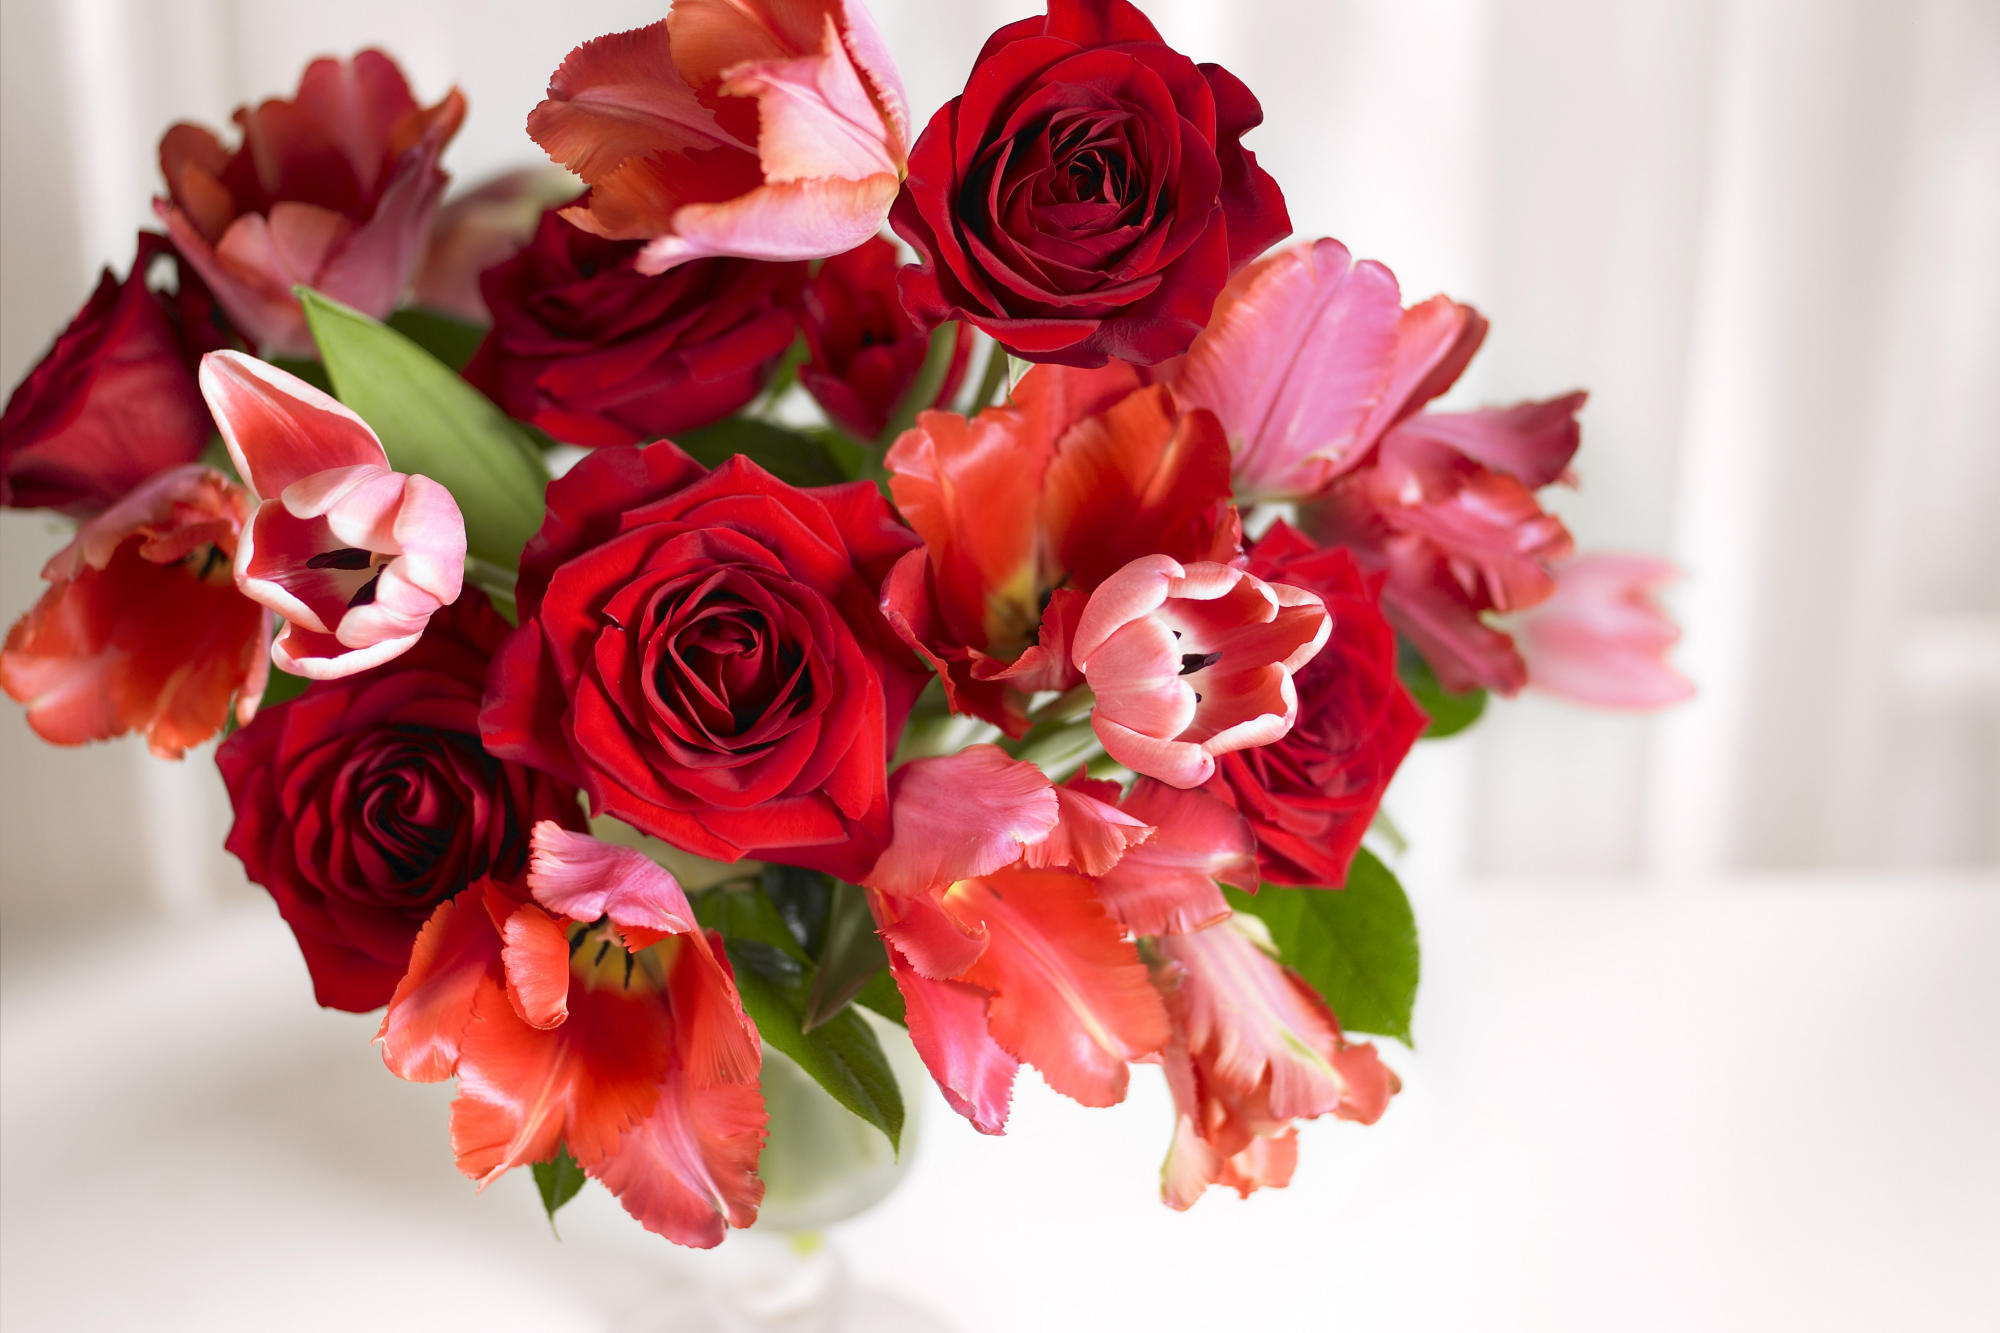 Скачать обои бесплатно Растения, Цветы, Букеты, Розы картинка на рабочий стол ПК